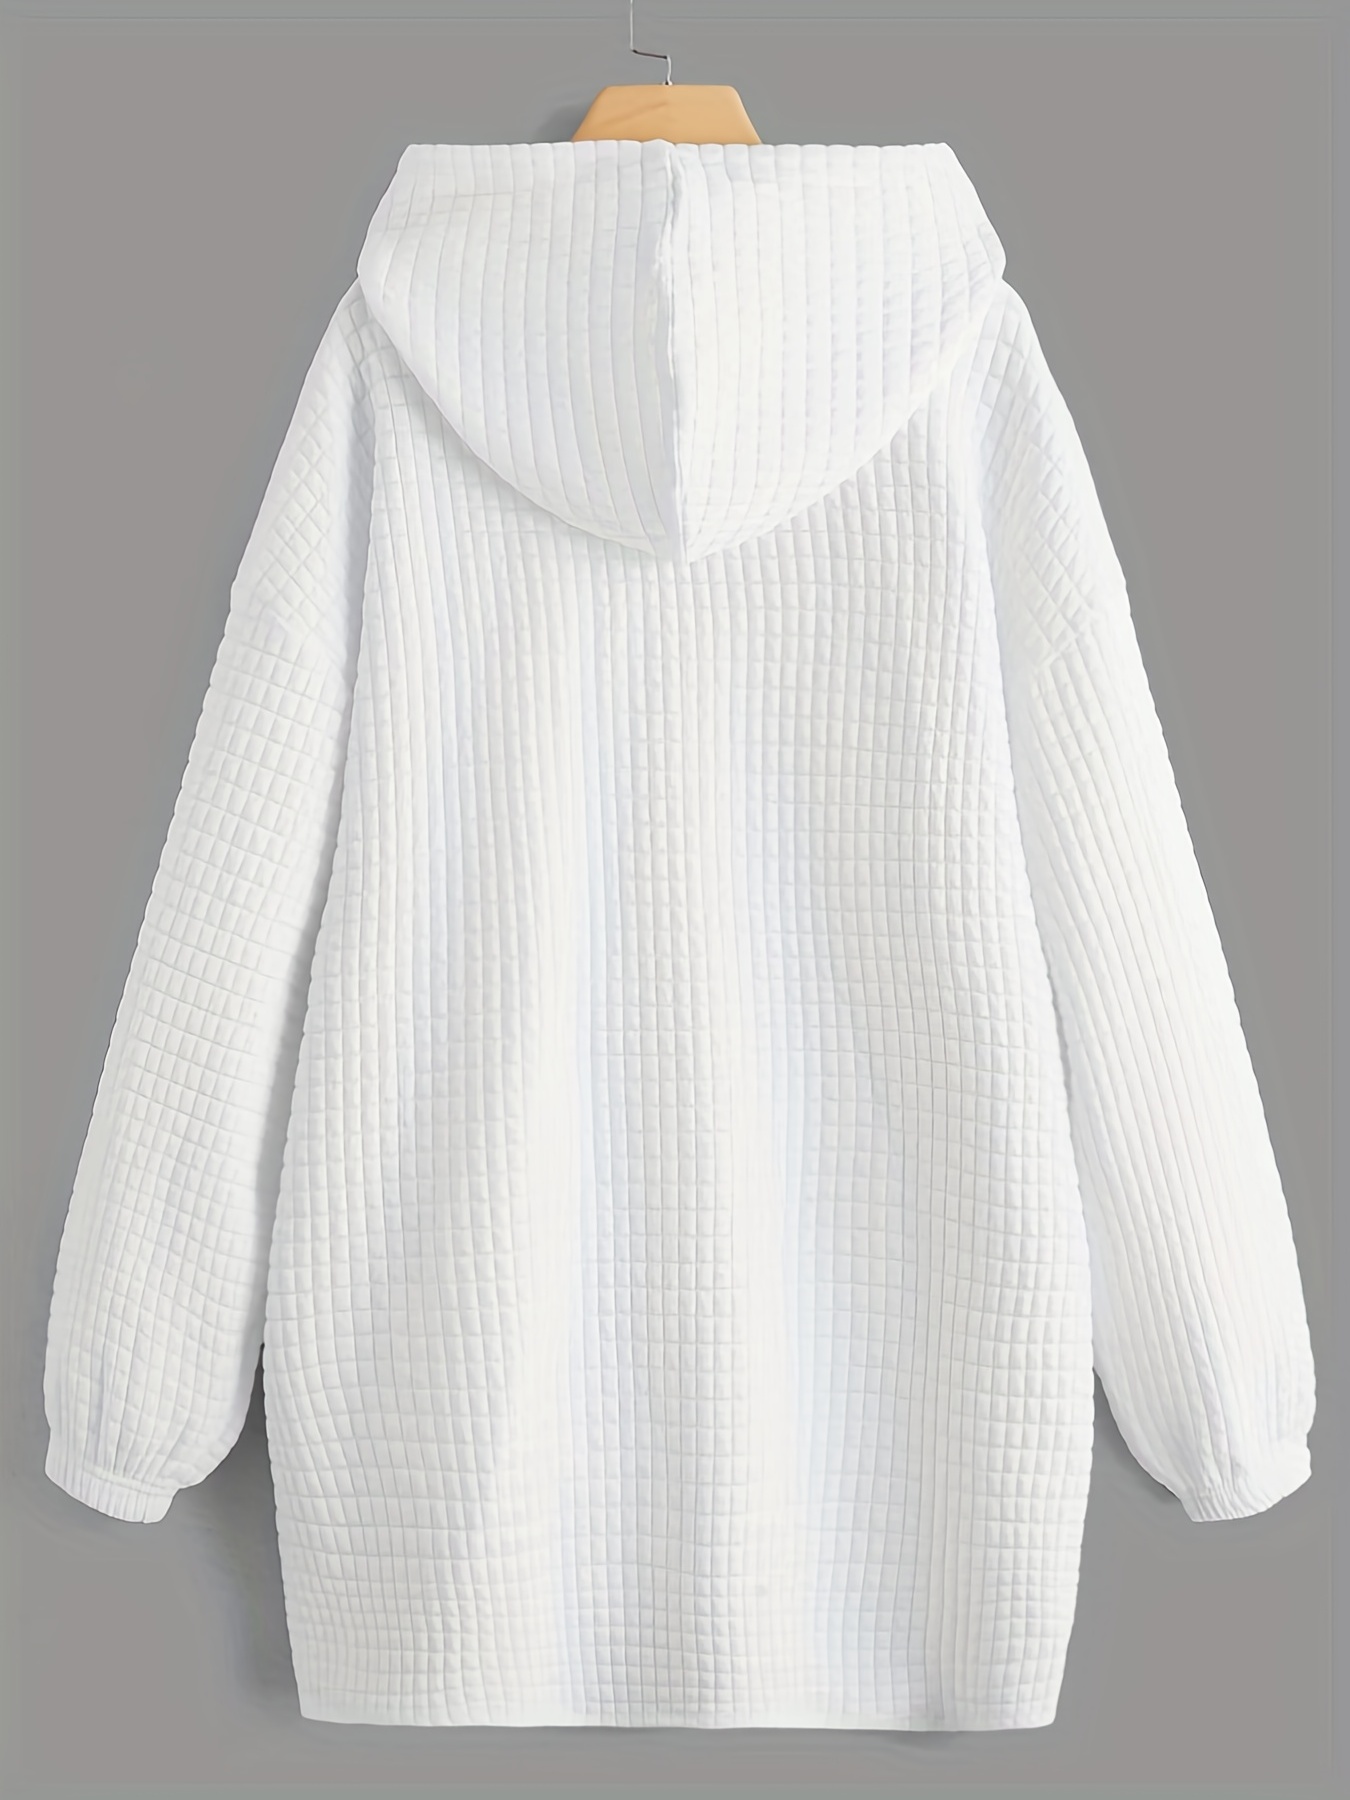 waffle grid kangaroo pocket hoodie casual long sleeve drawstring hoodie sweatshirt womens clothing details 0